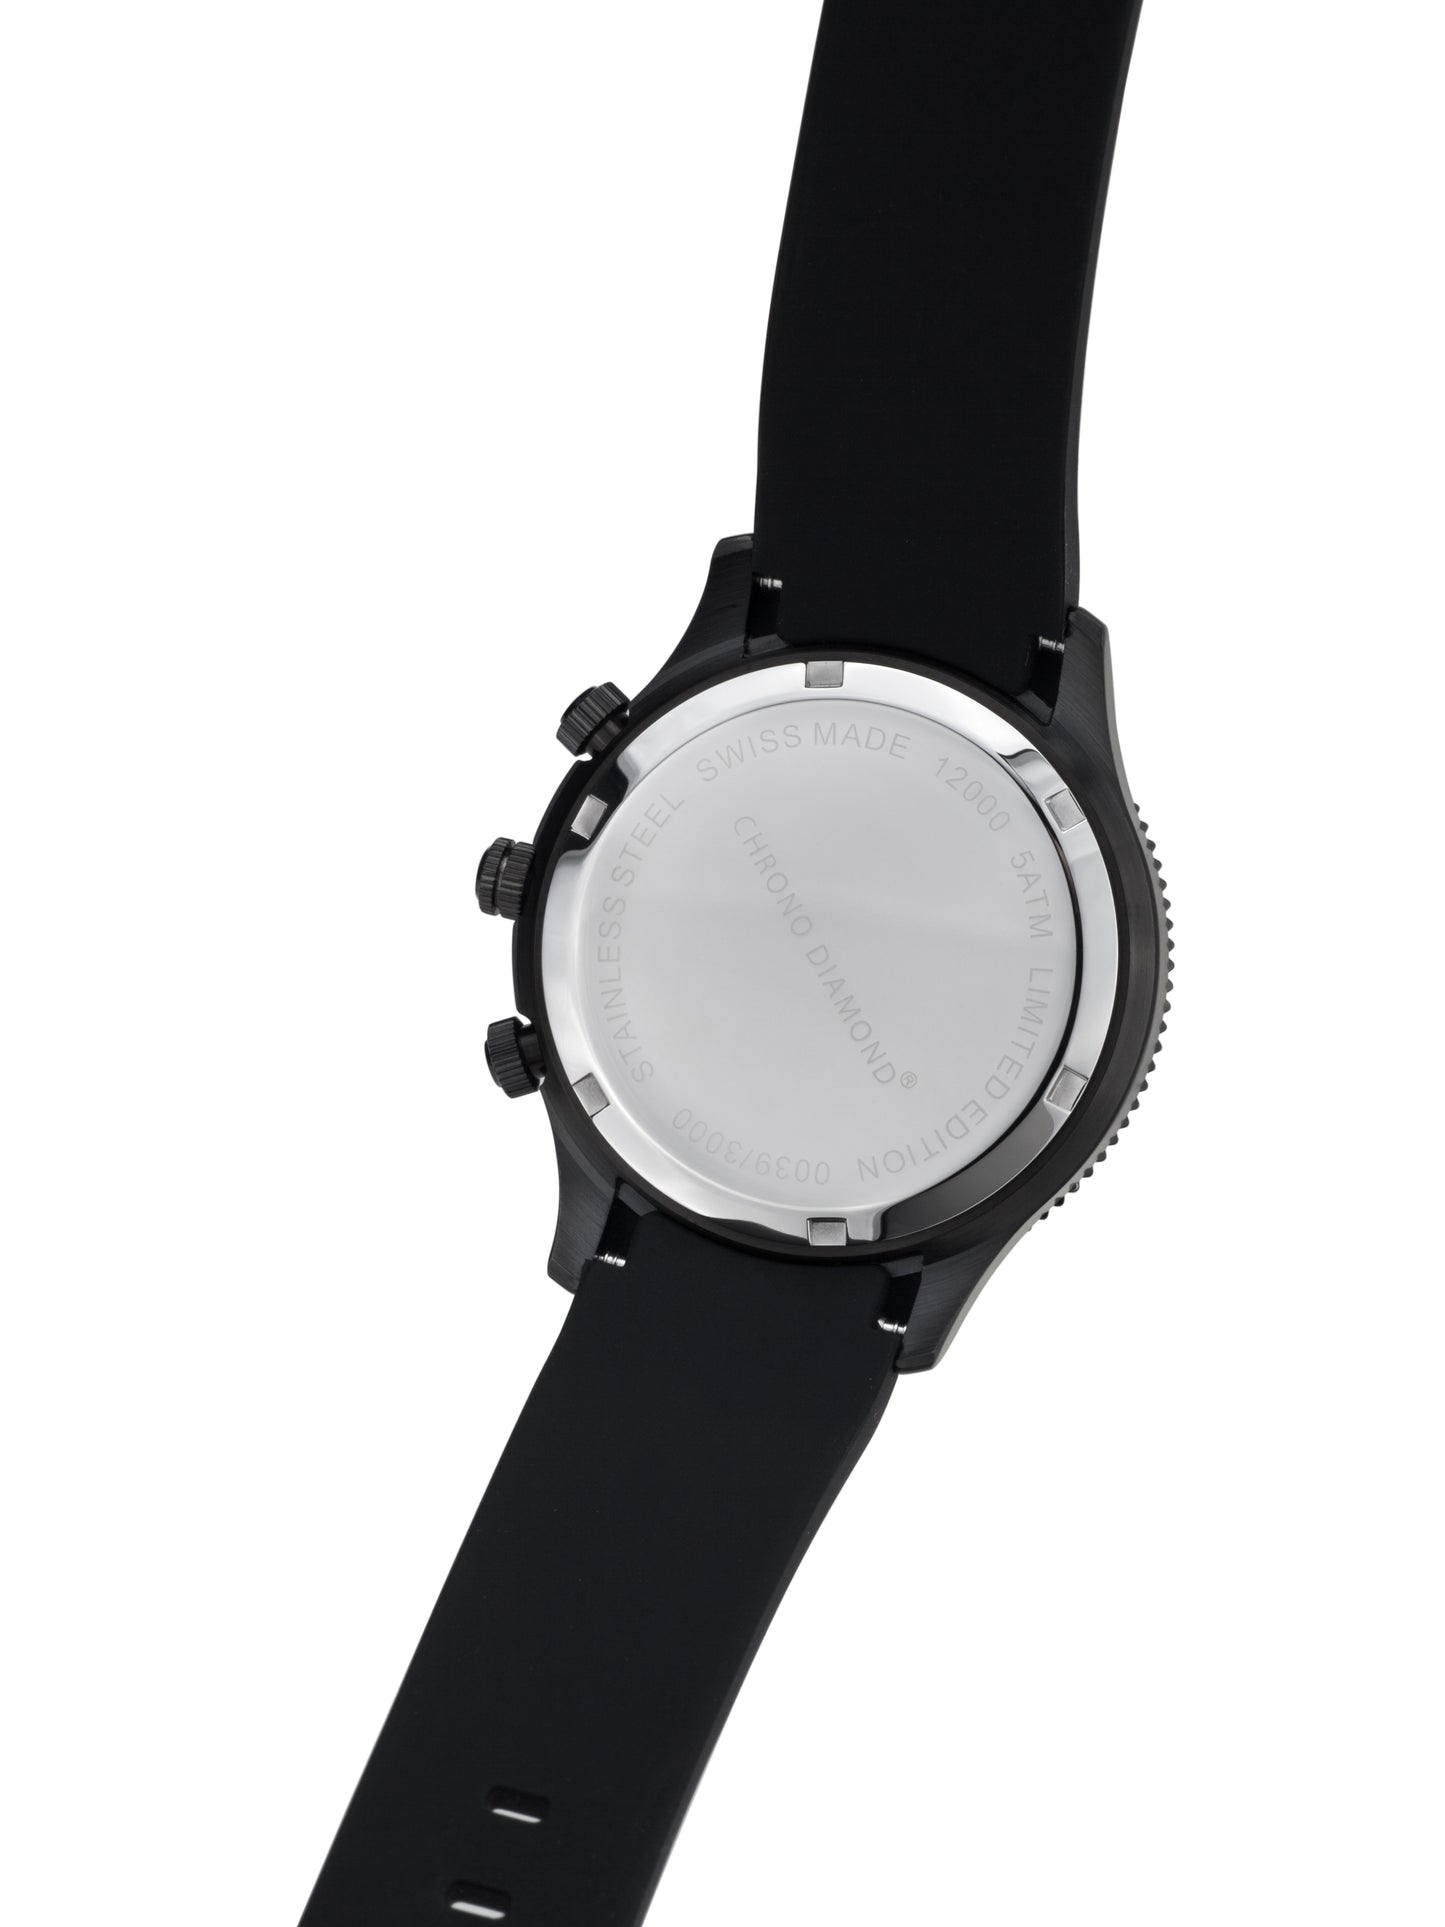 Automatic watches — Okeanos — Chrono Diamond — black IP